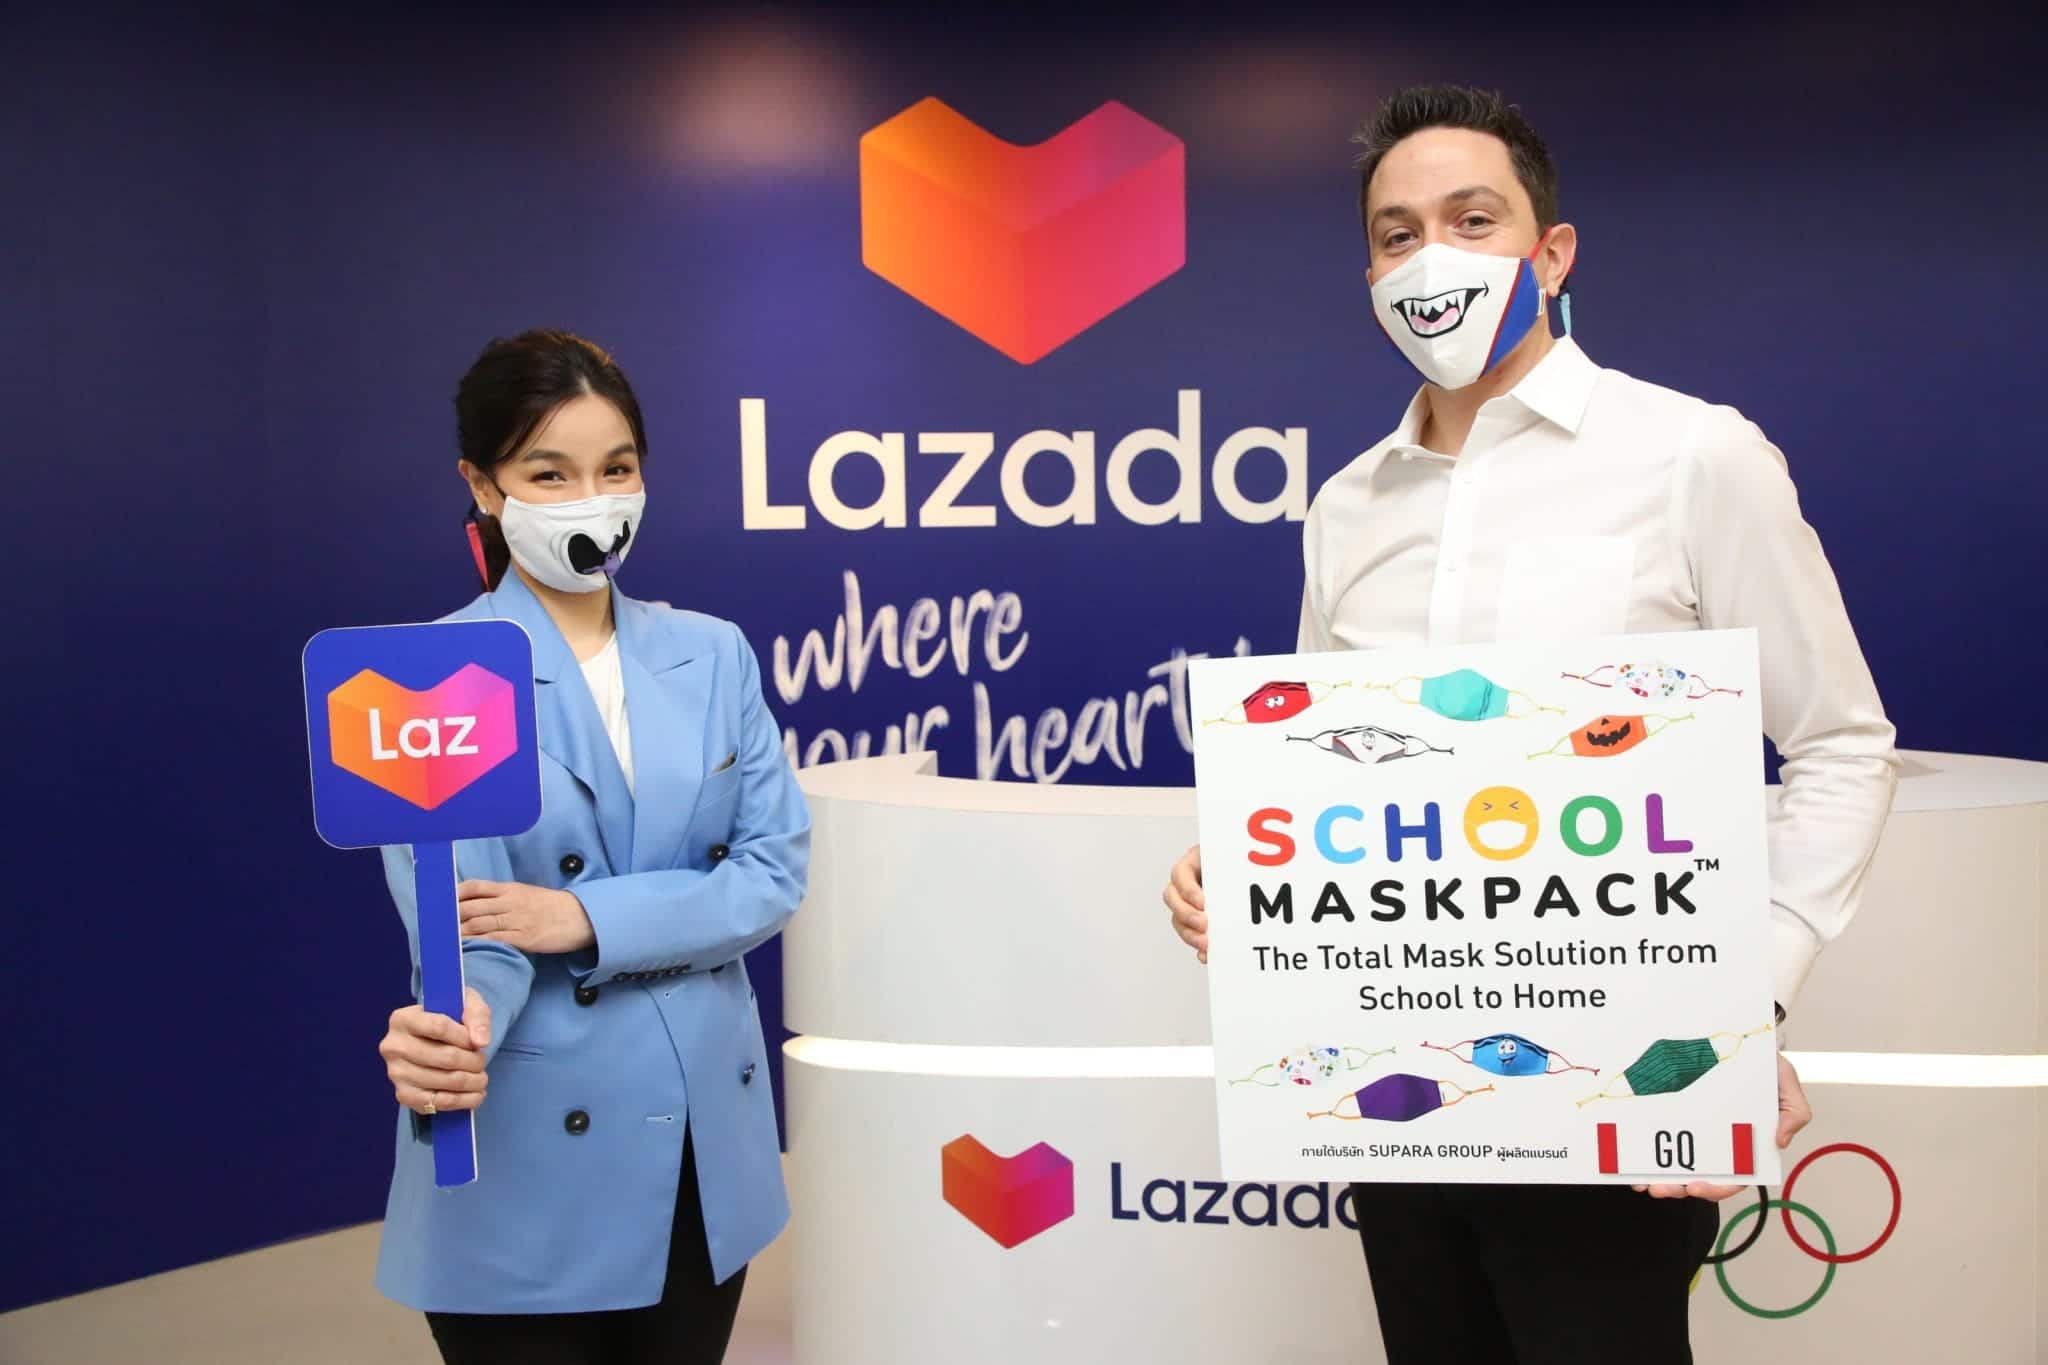 ลาซาด้าจับมือ GQ ขยายช่องทางออนไลน์จำหน่ายหน้ากากผ้าแบรนด์ใหม่สุดฮิต SchoolMaskPack™ ขยายตลาดสินค้าแม่และเด็กทั่วประเทศ 1